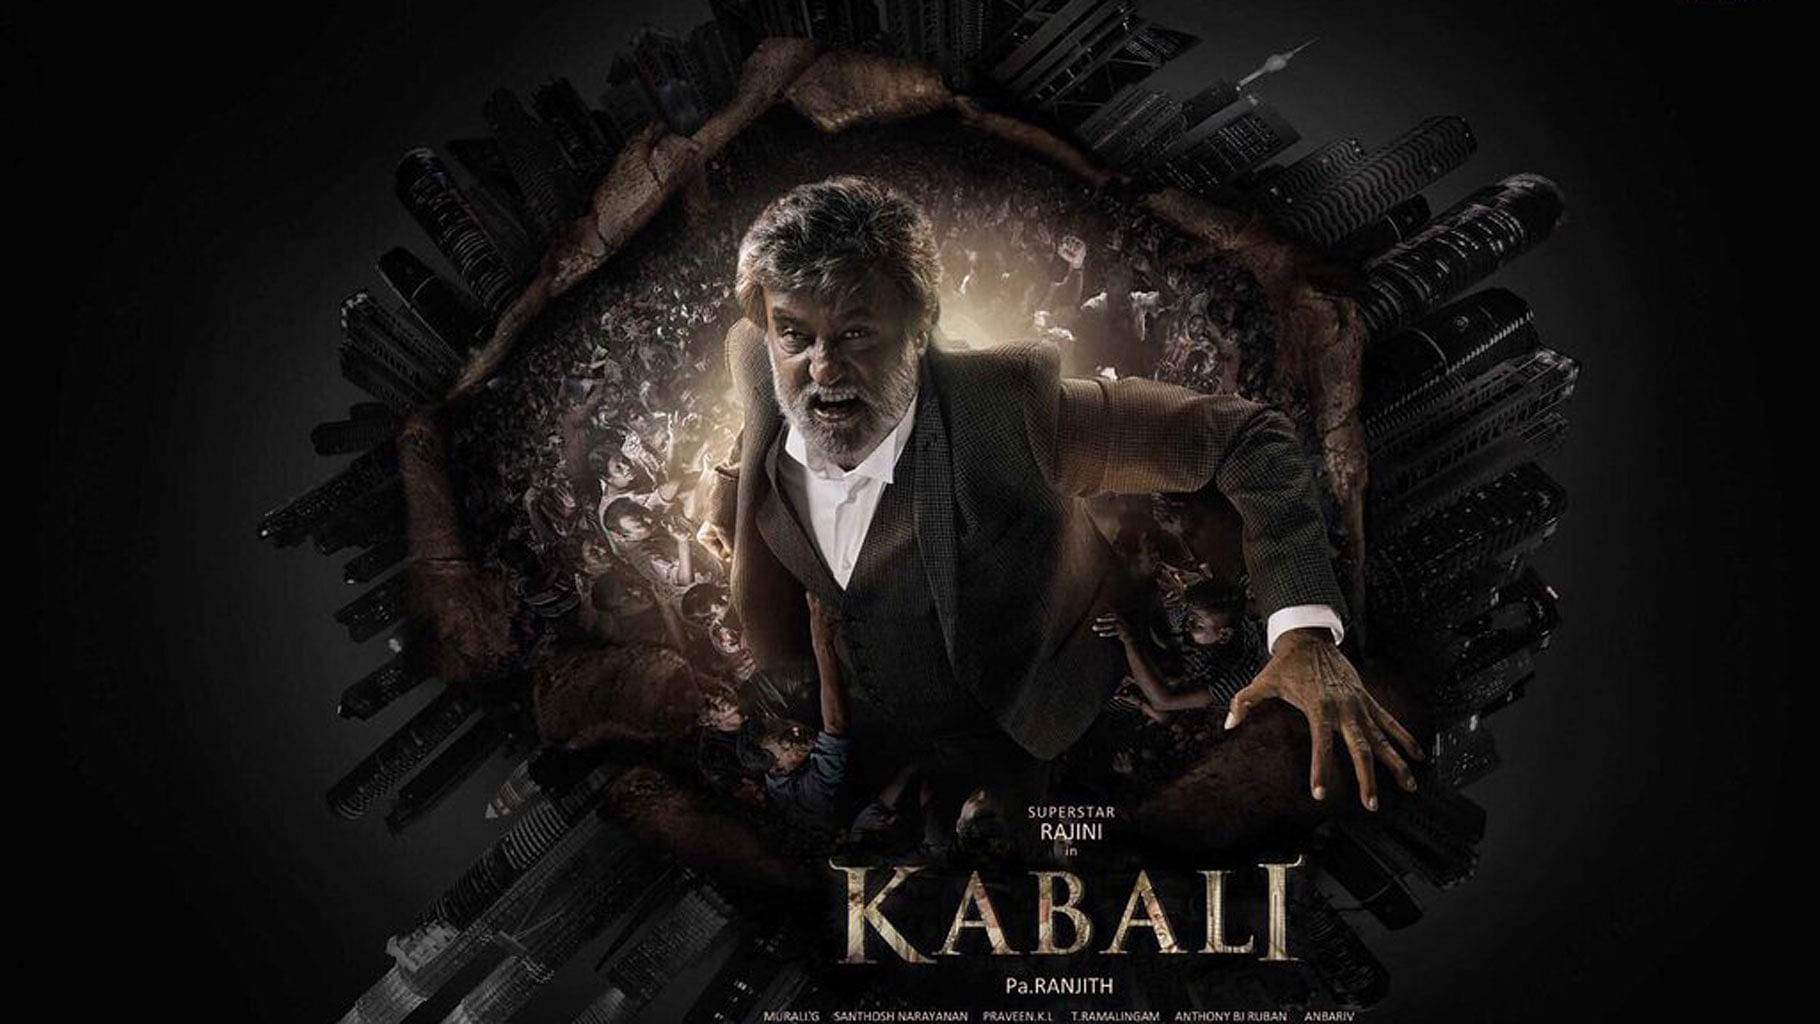 Rajinikanth on the poster of <i>Kabali. </i>(Photo courtesy: Twitter)